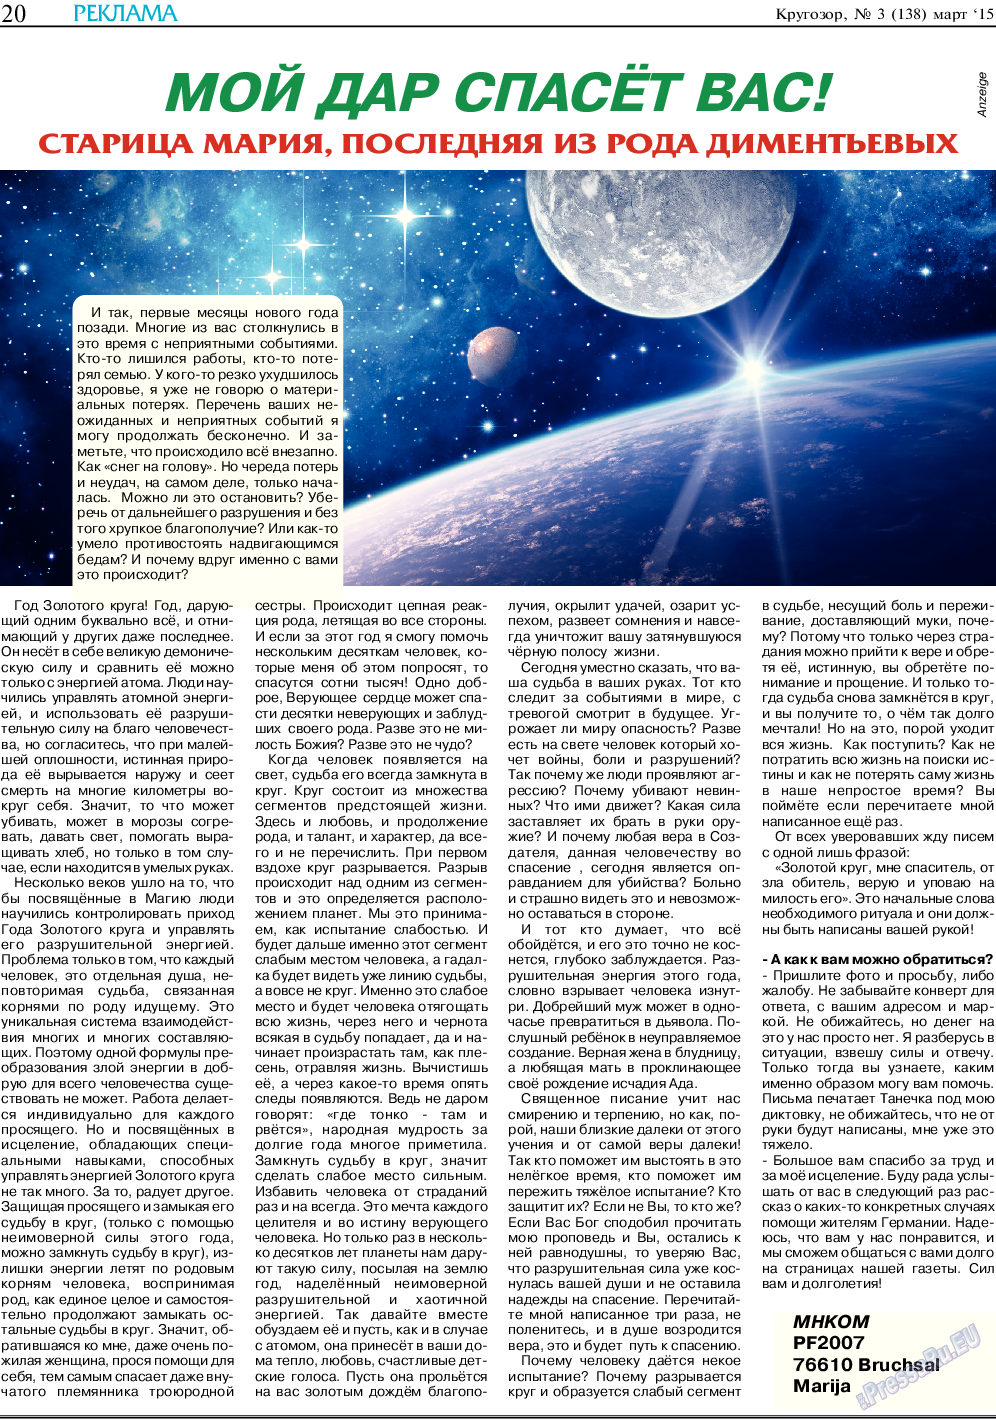 Кругозор, газета. 2015 №3 стр.20